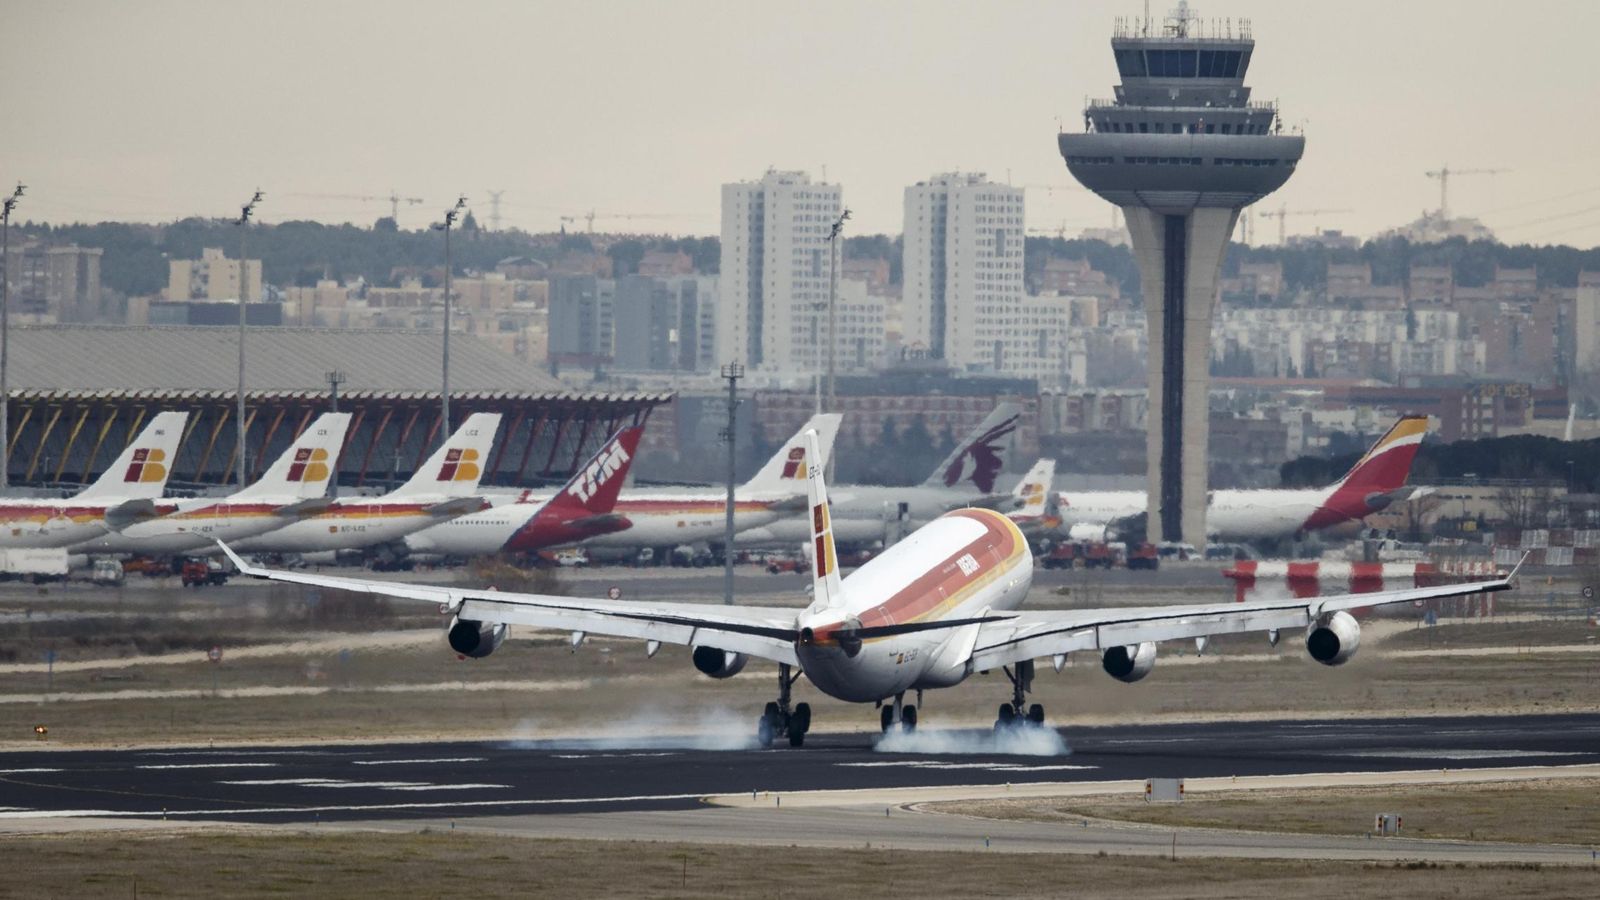 Foto: Un avión aterriza en el aeropuerto madrileño Adolfo Suárez Barajas. (Reuters)